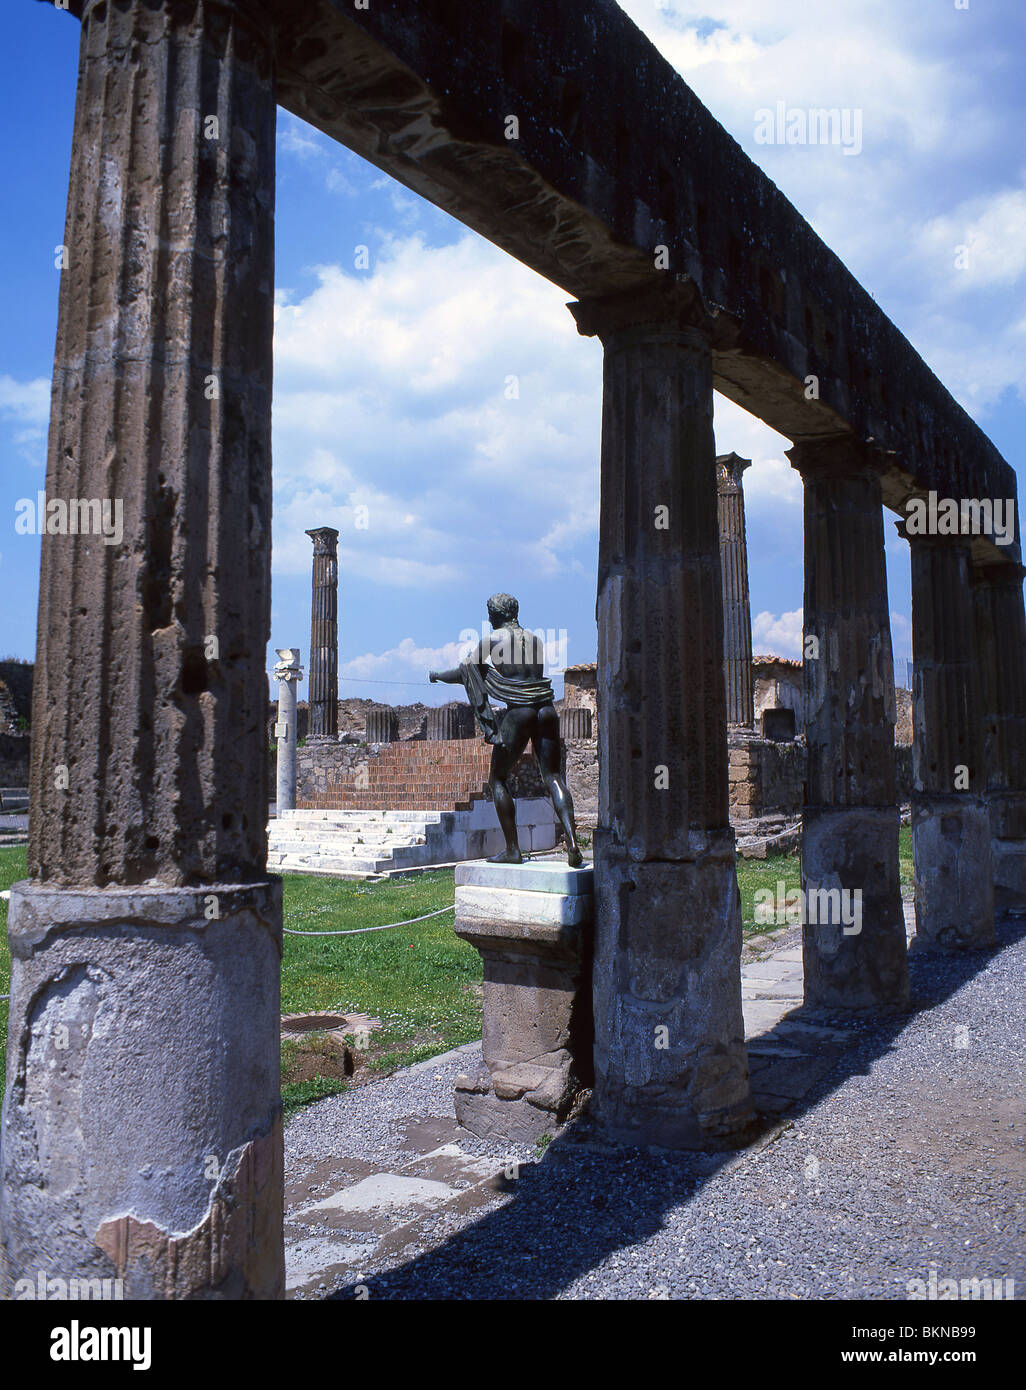 Statue of Apollo and columns, Sanctuary of Apollo, Ancient City of Pompeii, Pompei, Metropolitan City of Naples, Campania Region, Italy Stock Photo